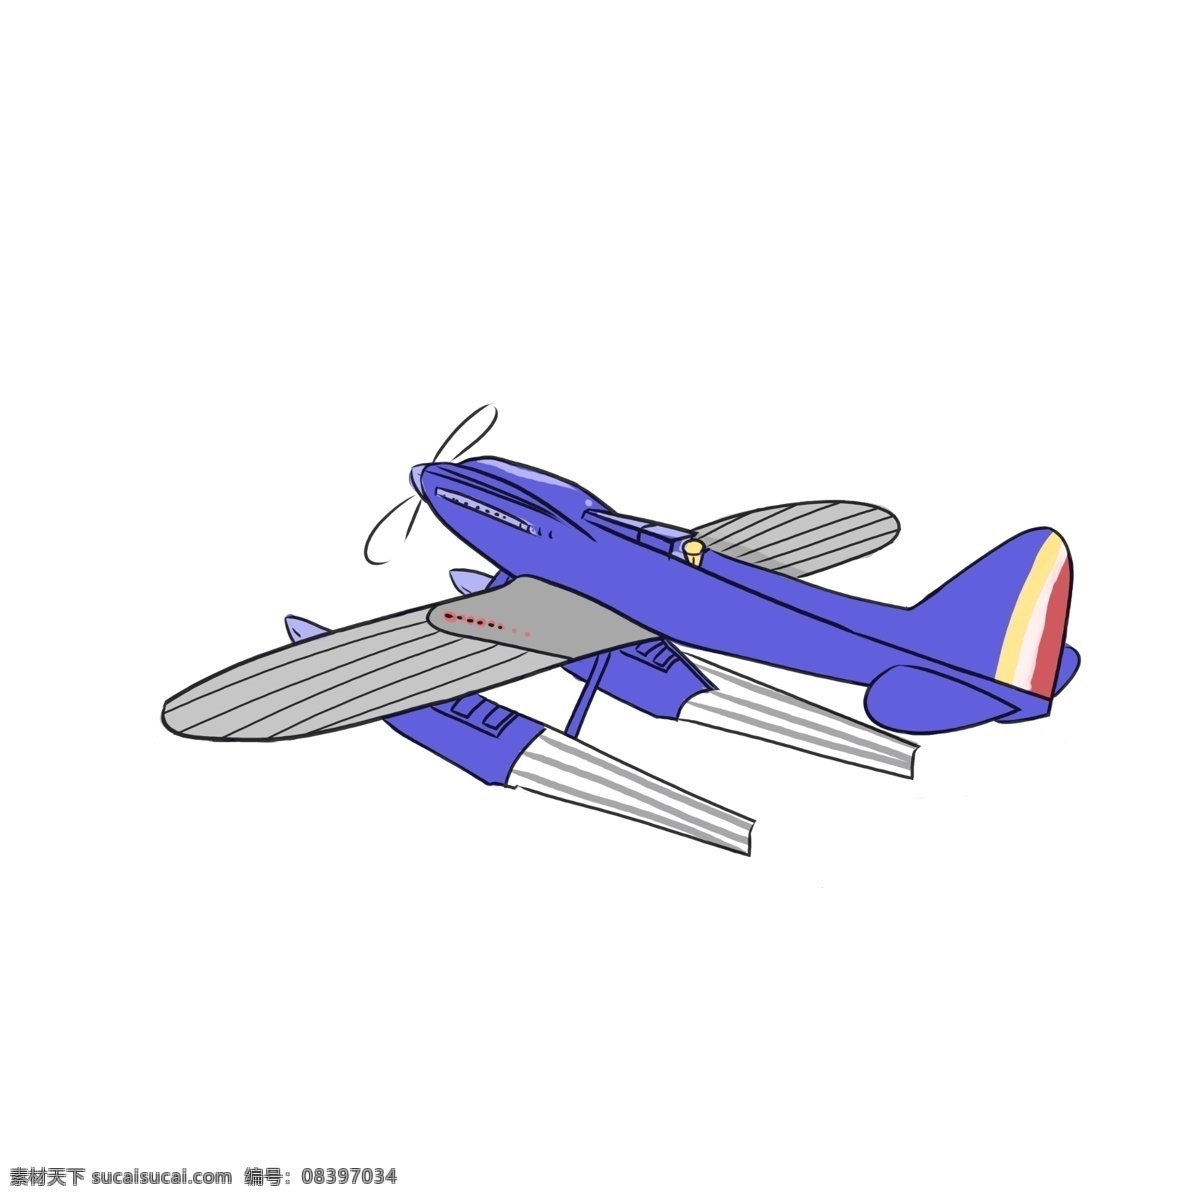 蓝色 飞机 手绘 插画 蓝色的飞机 精美飞机 手绘飞机 卡通飞机 飞机装饰 飞机插画 航空飞机 航天飞机